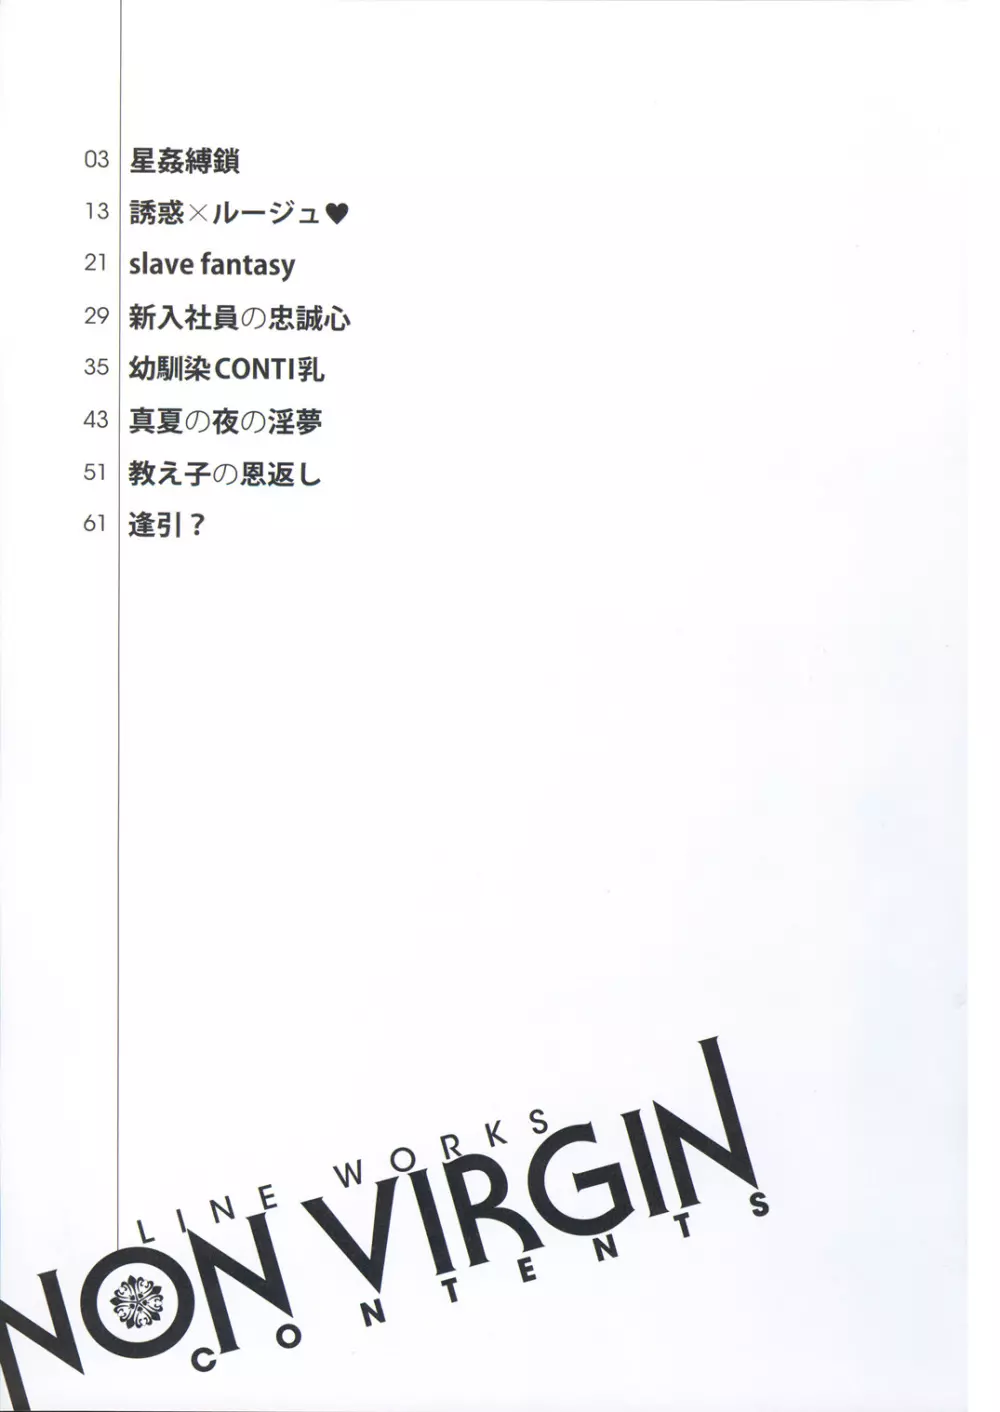 [織田non] NON VIRGIN 【Limited Edition】 CHRONICLE-FULLCOLOR BOOKLET-SIDE:MELON + NON VIRGIN LINE WORKS + Postcard 111ページ